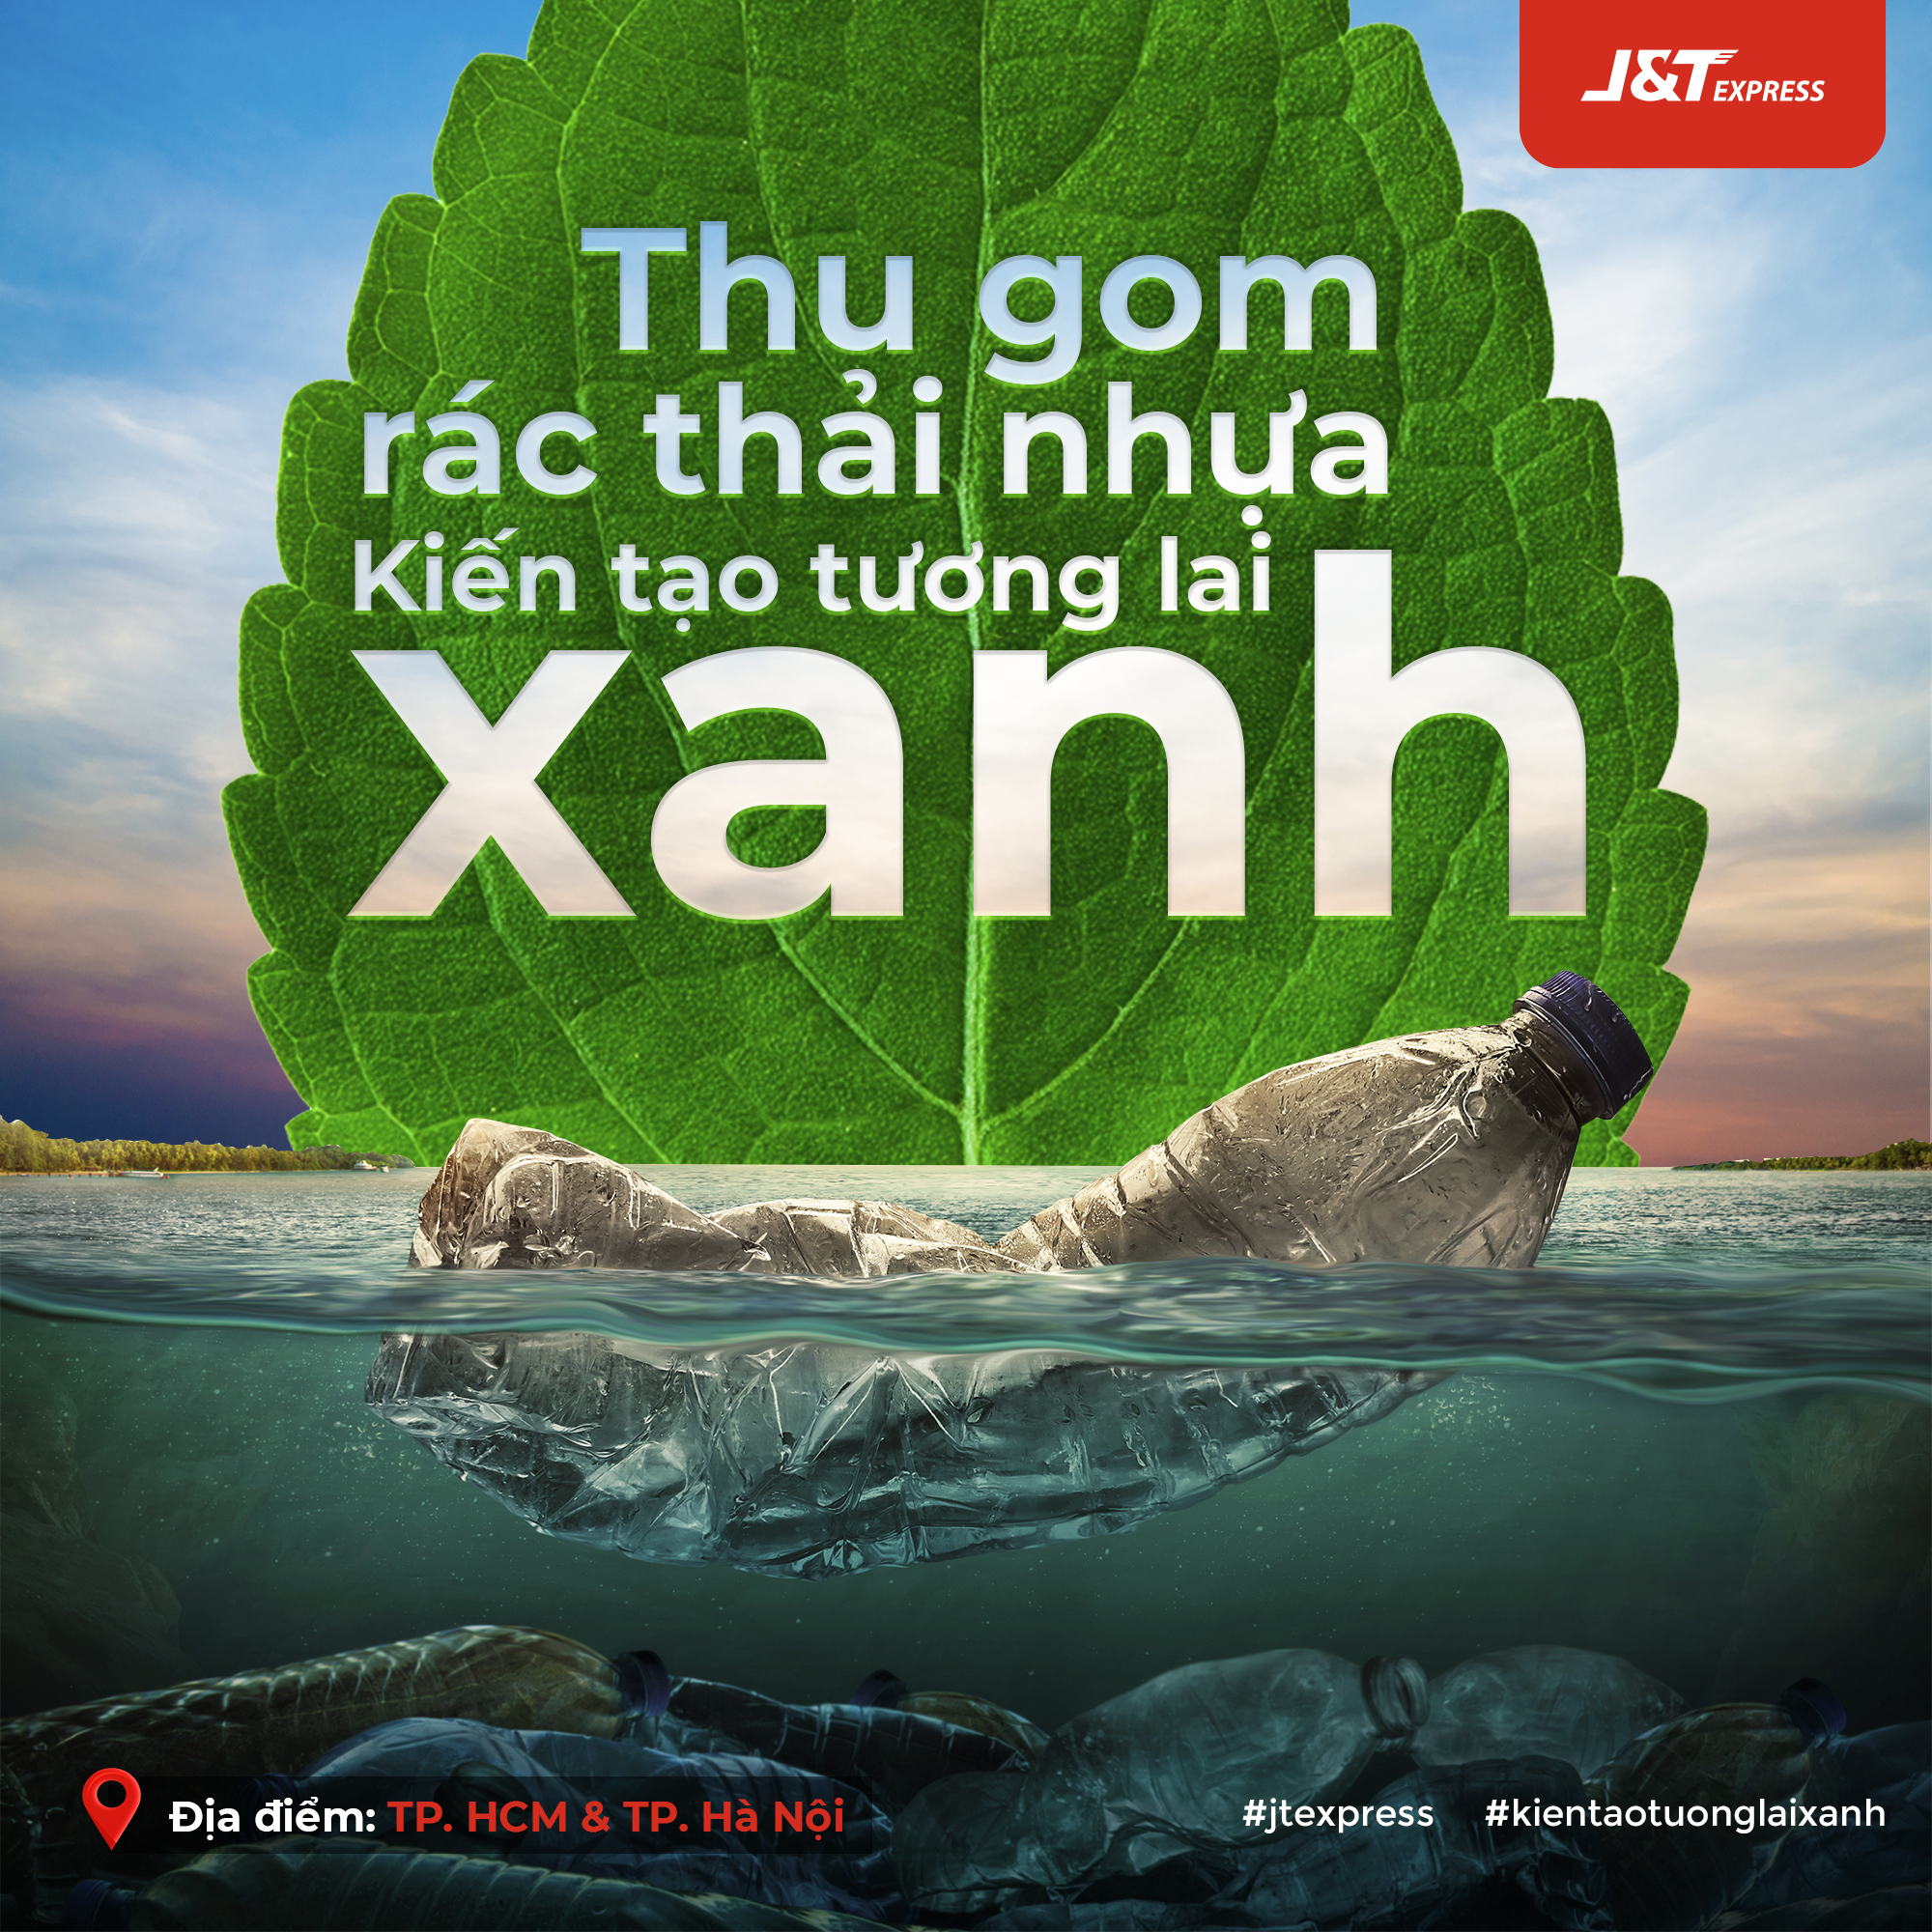 Danh sách 25 điểm thu gom rác thải nhựa tại TP. Hà Nội và TP. Hồ Chí Minh